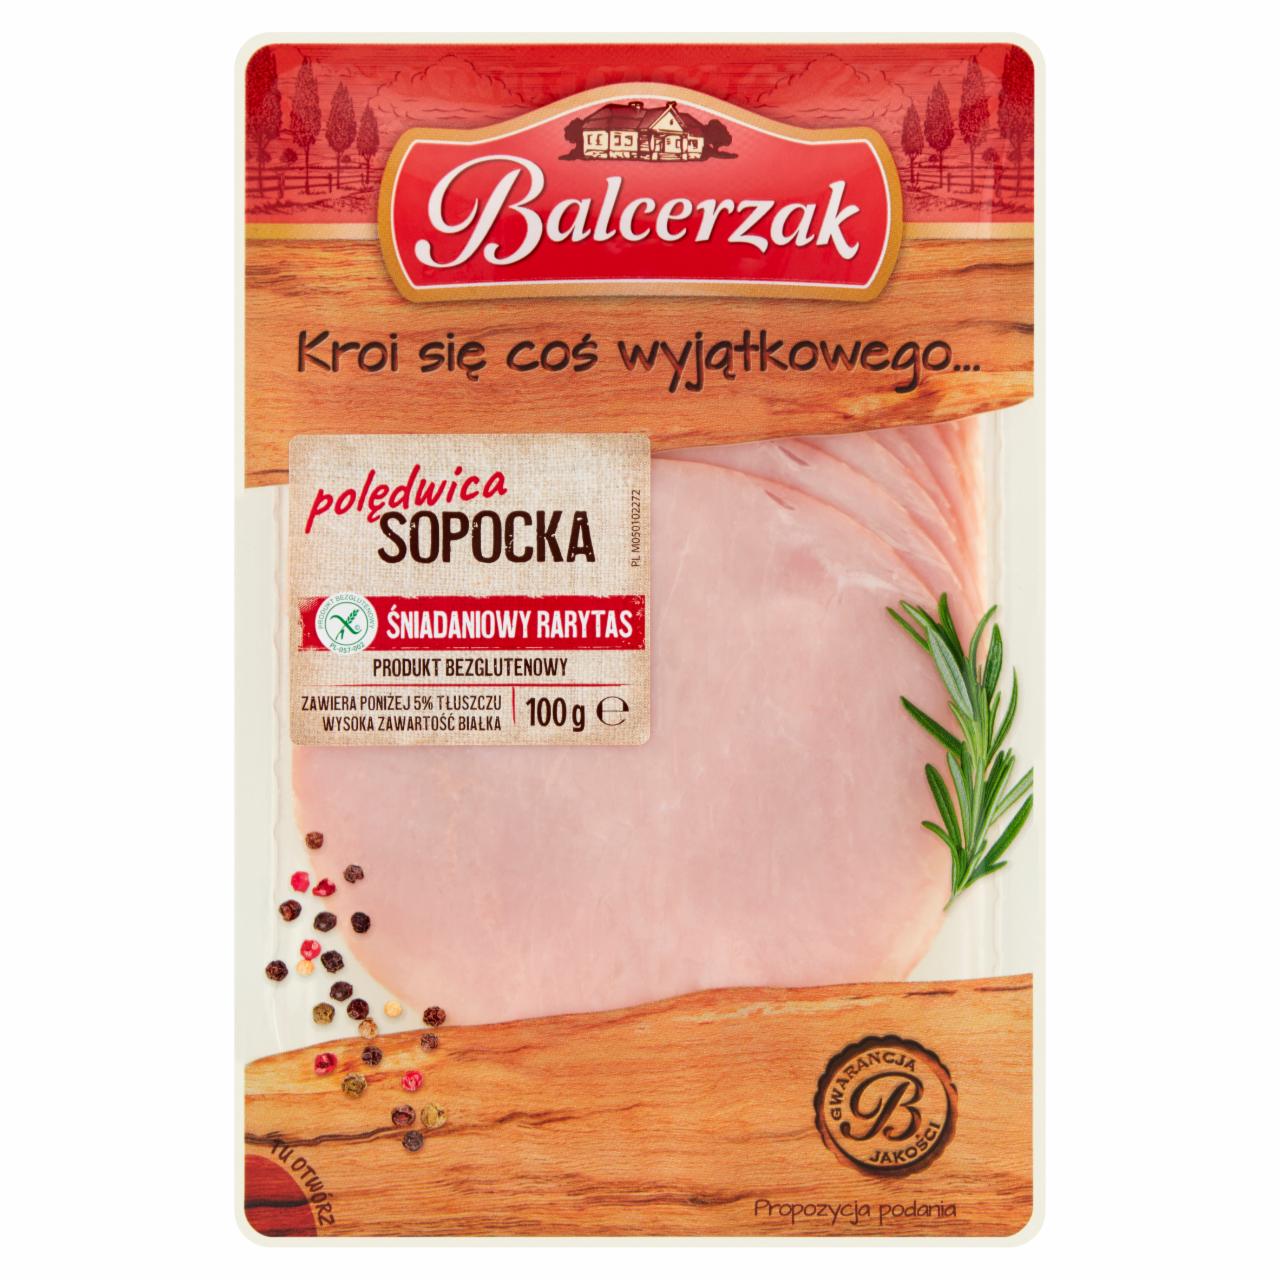 Photo - Balcerzak Sopocka Pork Loin 100 g